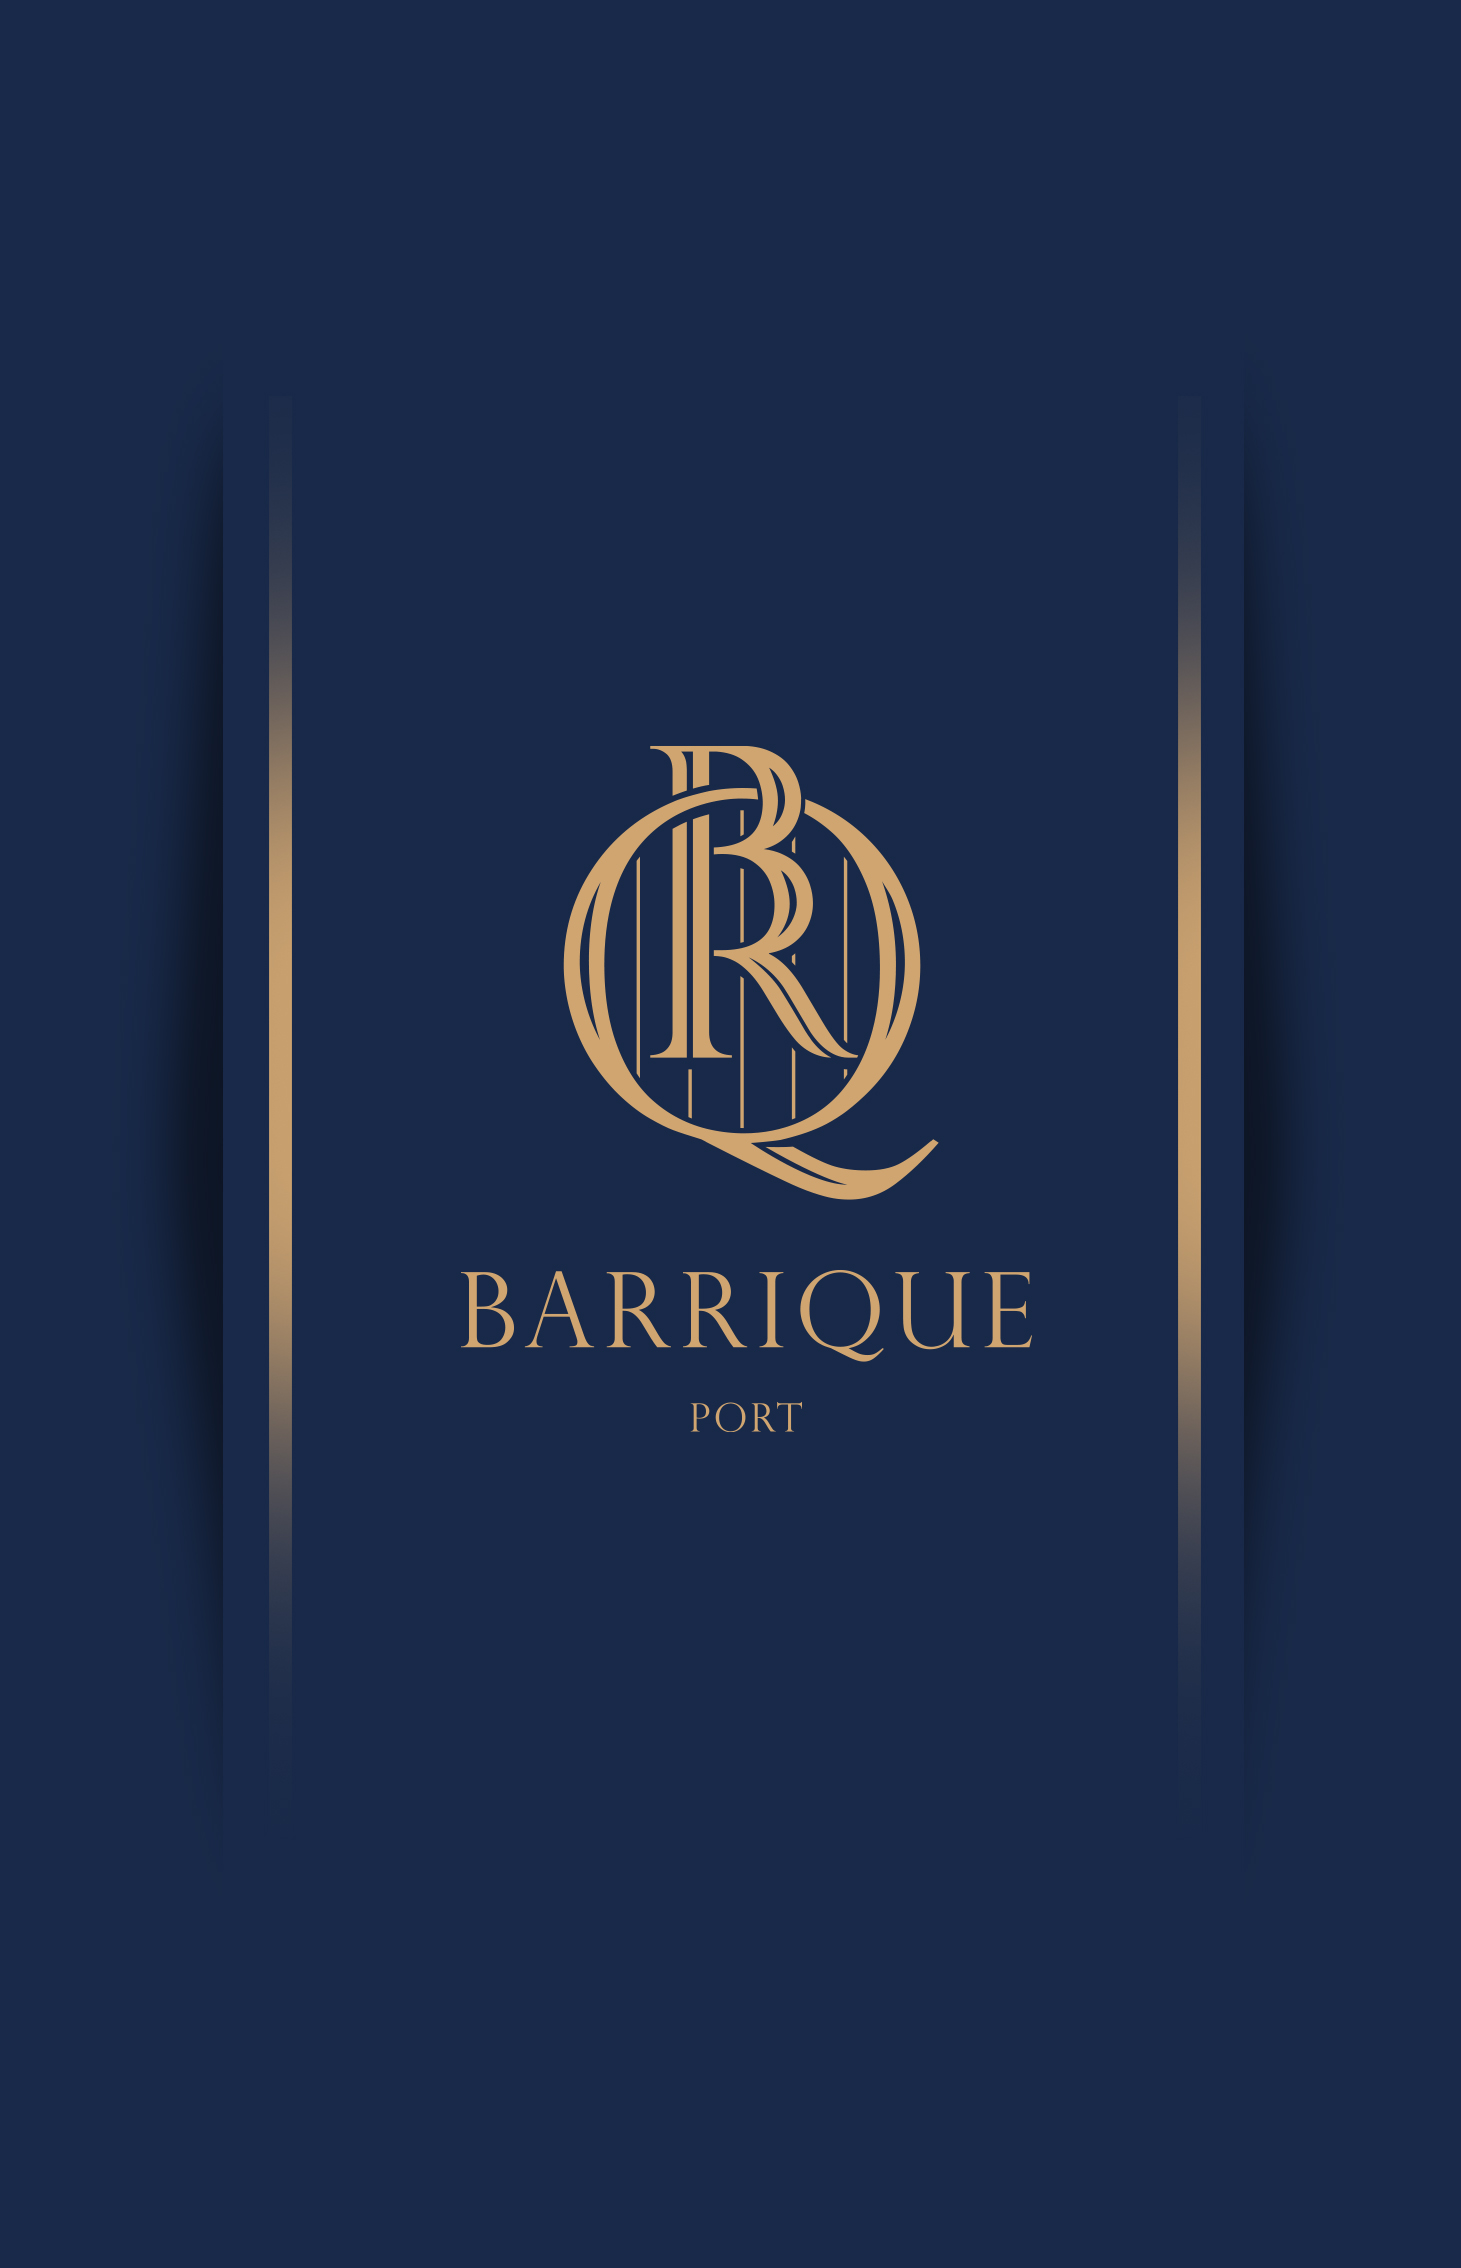 Barrique Port 4 - Barrique Port - The Design Boutique -Barrique Port 4